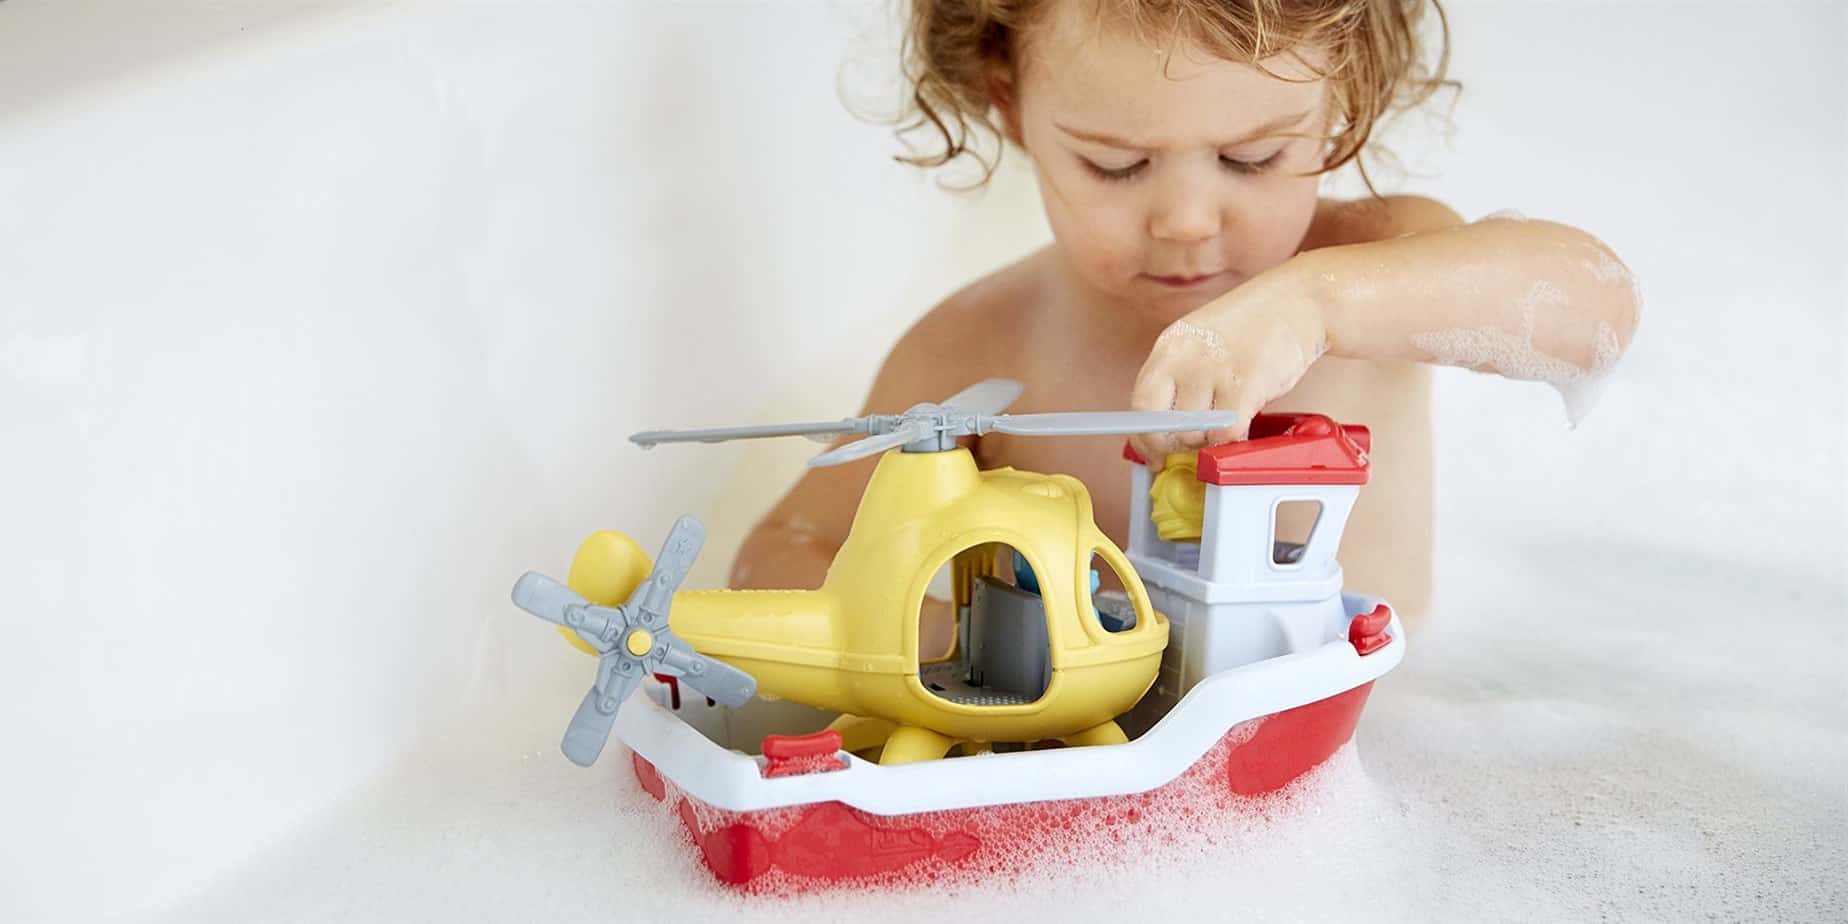 Subjectief Vervorming hulp in de huishouding Het leukste speelgoed voor kindjes van 2 jaar. in 2022 [koopgids] -  mamapagina.com